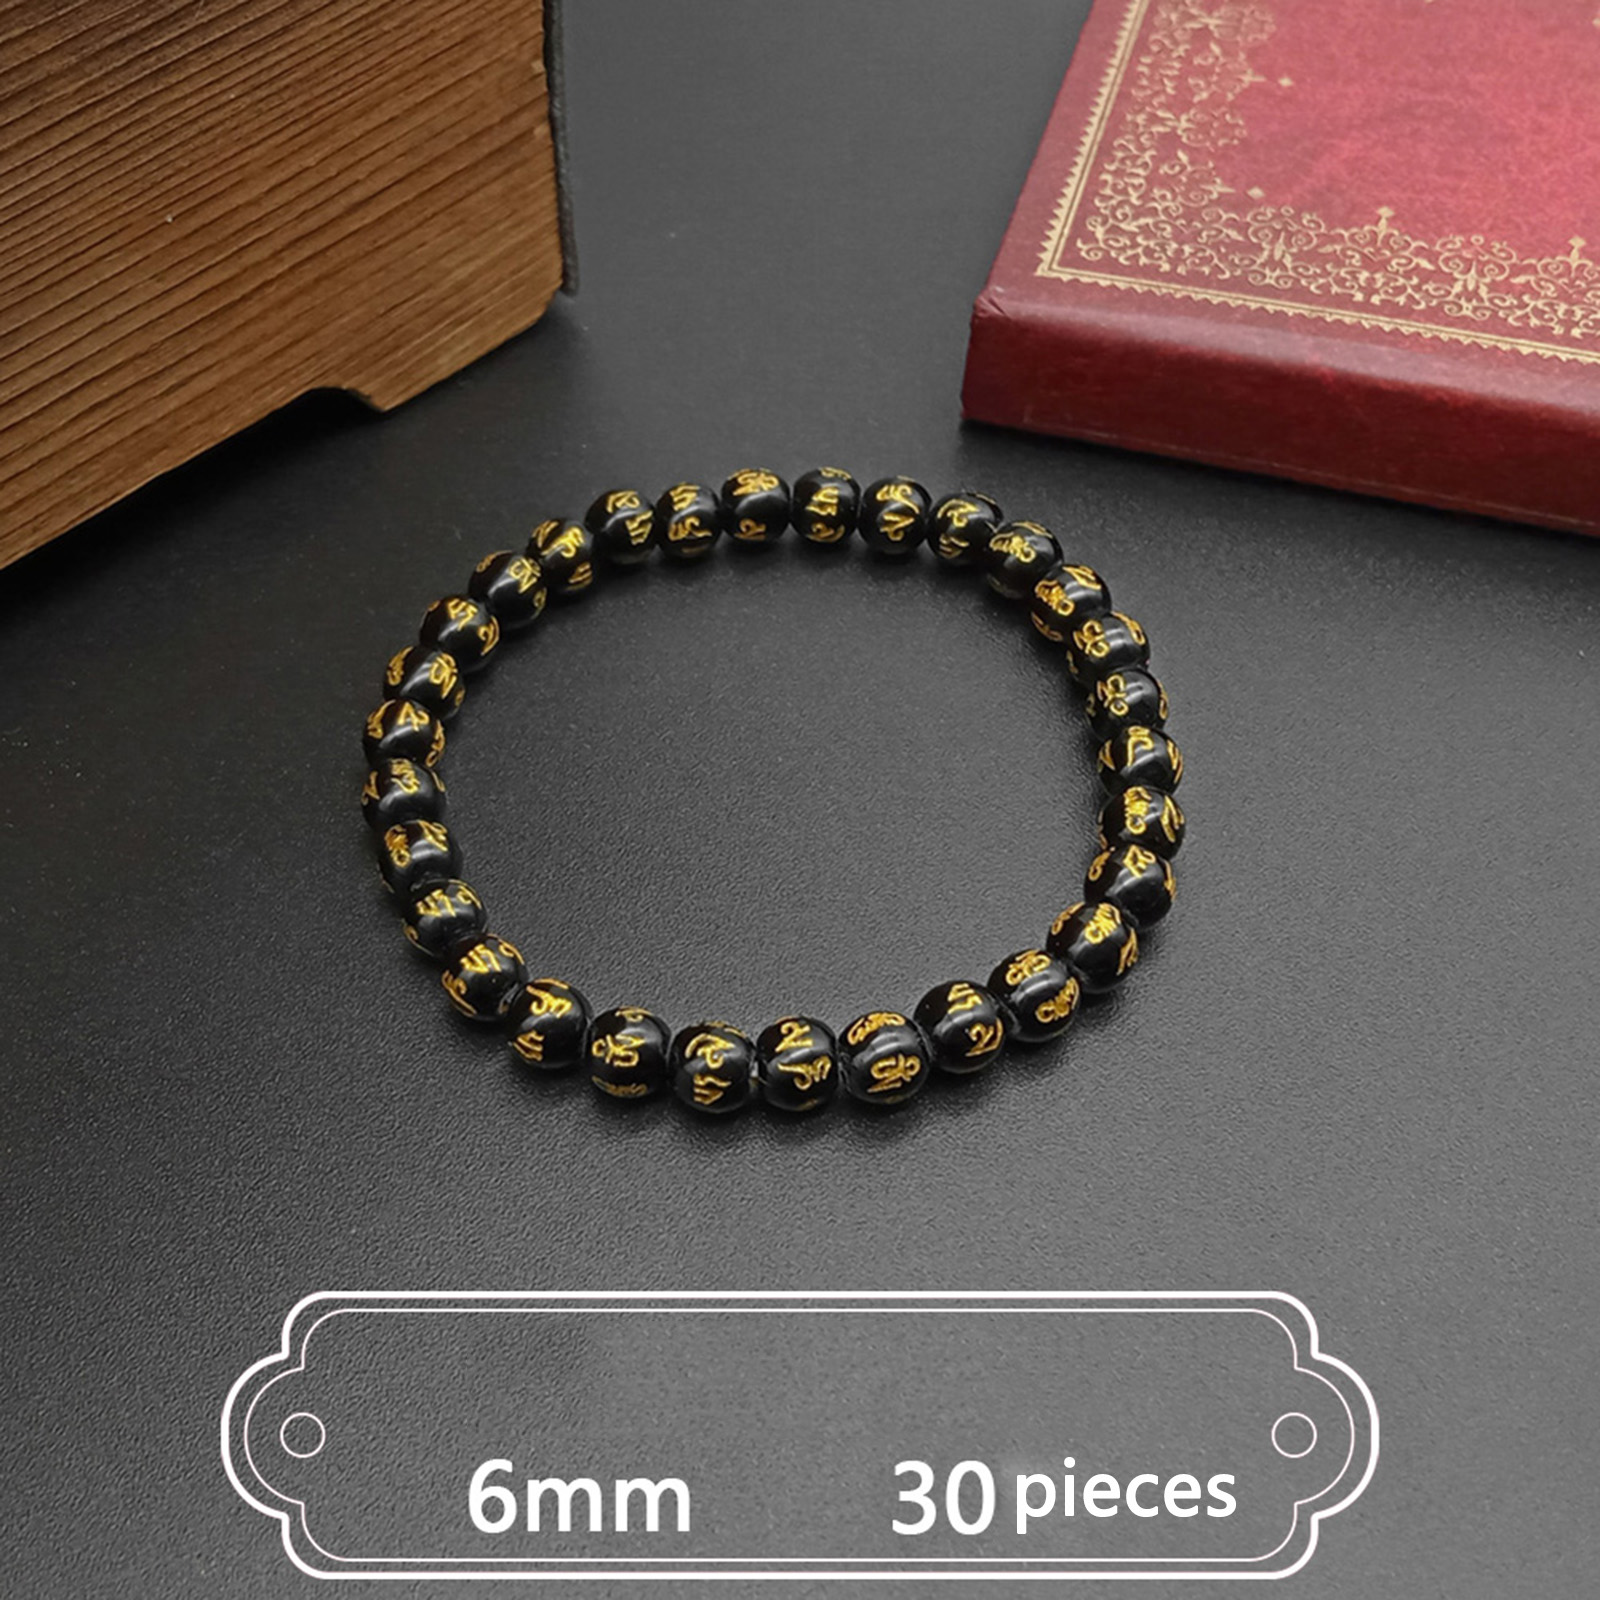 6:(Female) Bead diameter 6mm 30 pieces